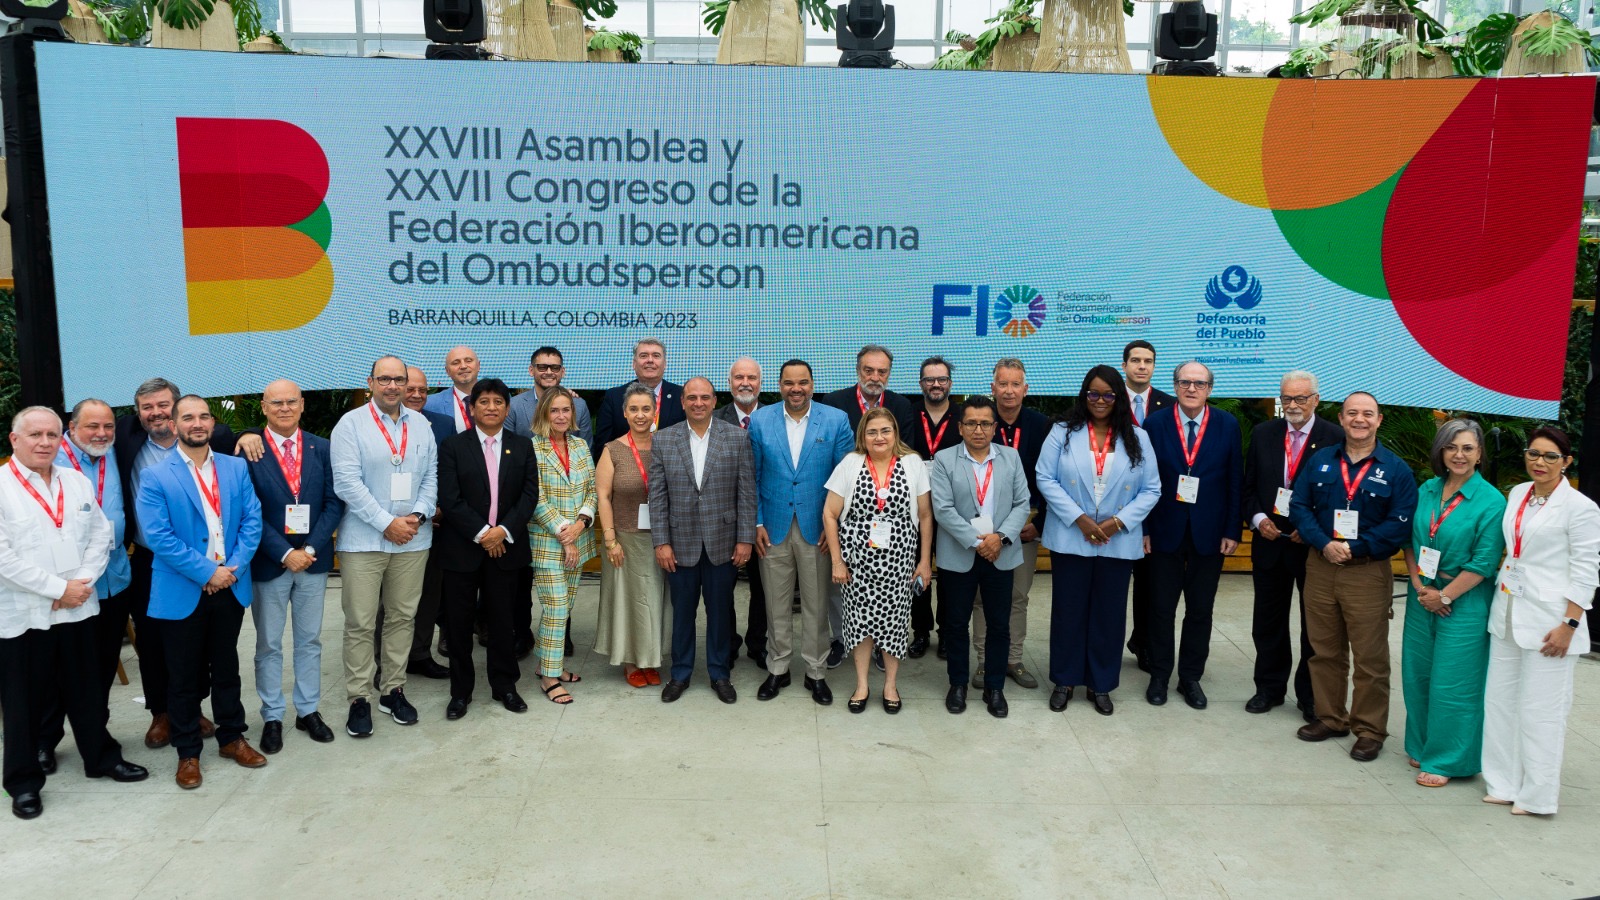 Defensor del Pueblo de Bolivia participó de la XXVIII Asamblea de la Federación Iberoamericana de Ombudsperson (FIO